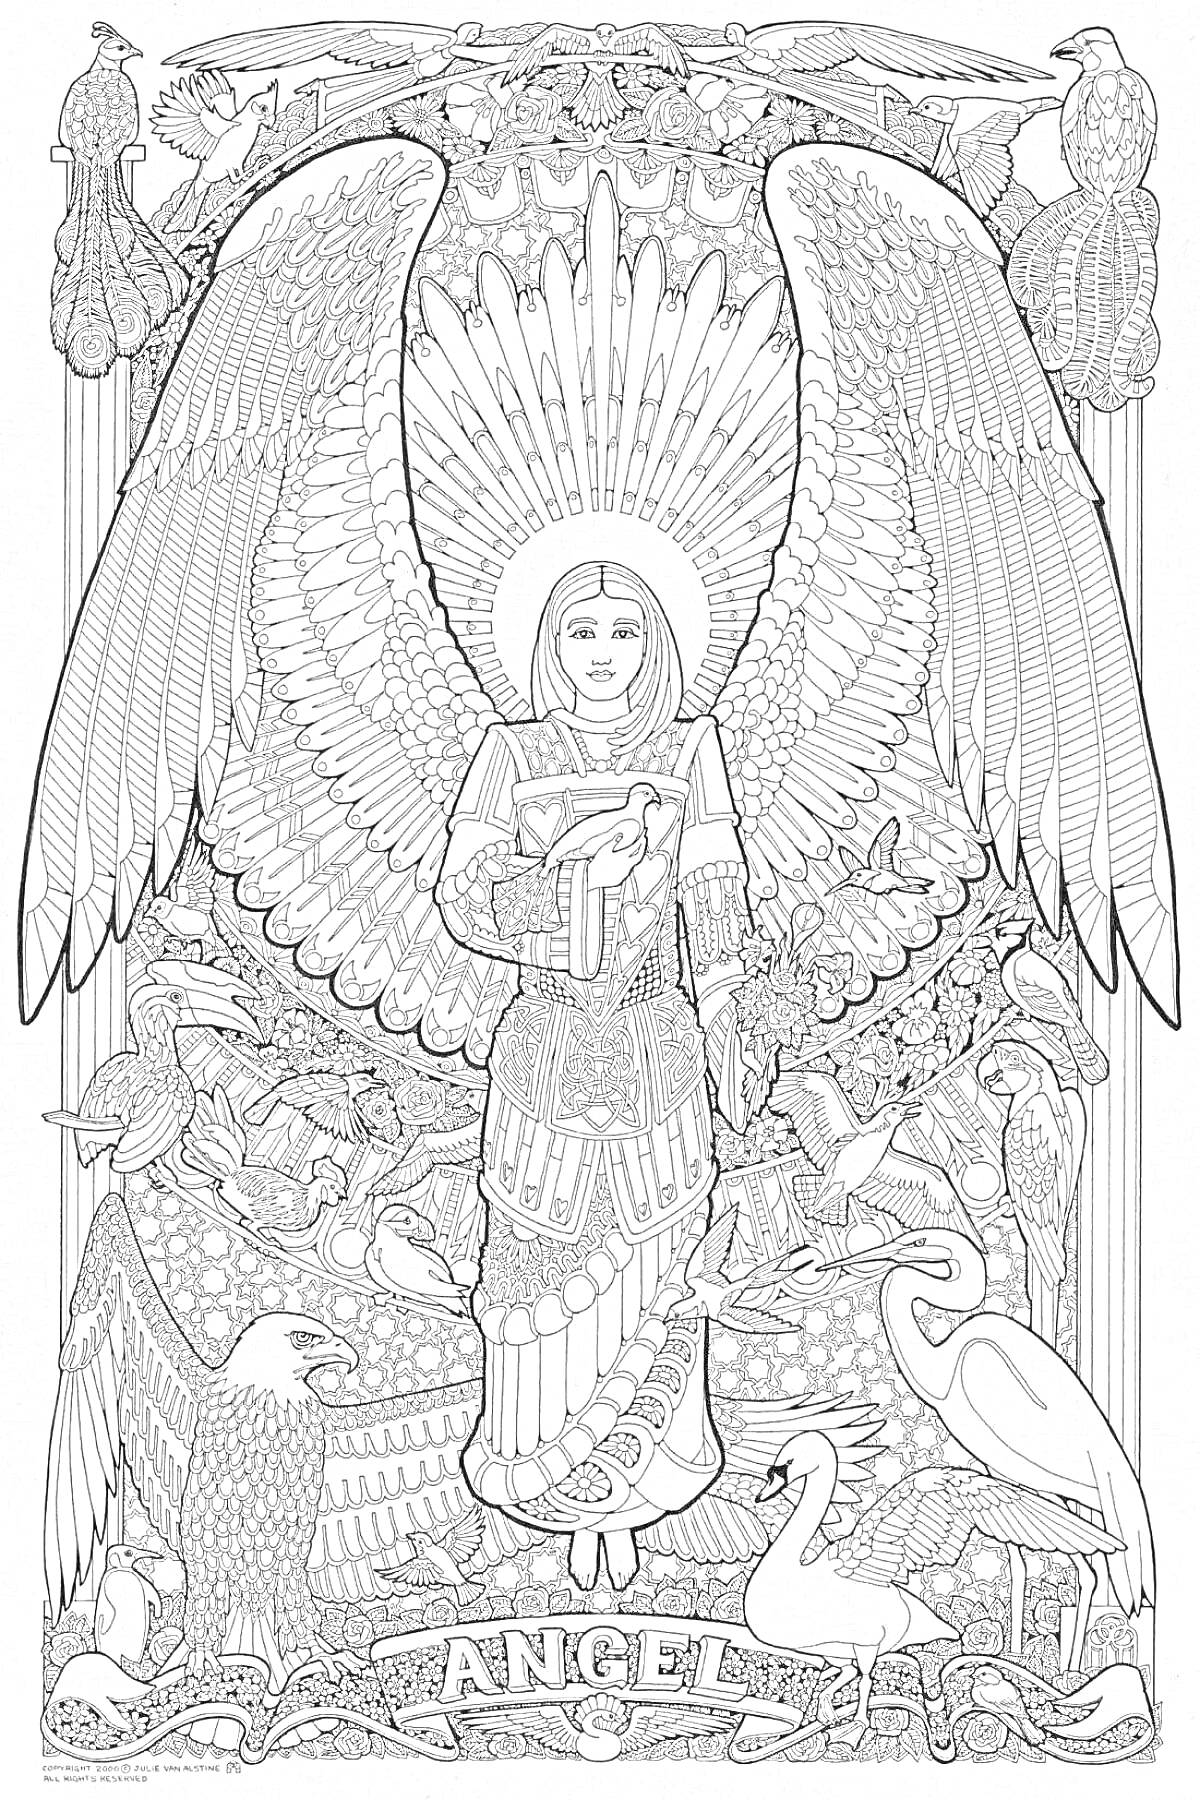 Раскраска Ангел среди птиц и перьев, держит книгу, с сиянием за ним, узор из перьев, четыре павлина наверху, два орла внизу, два лебедя рядом с ними